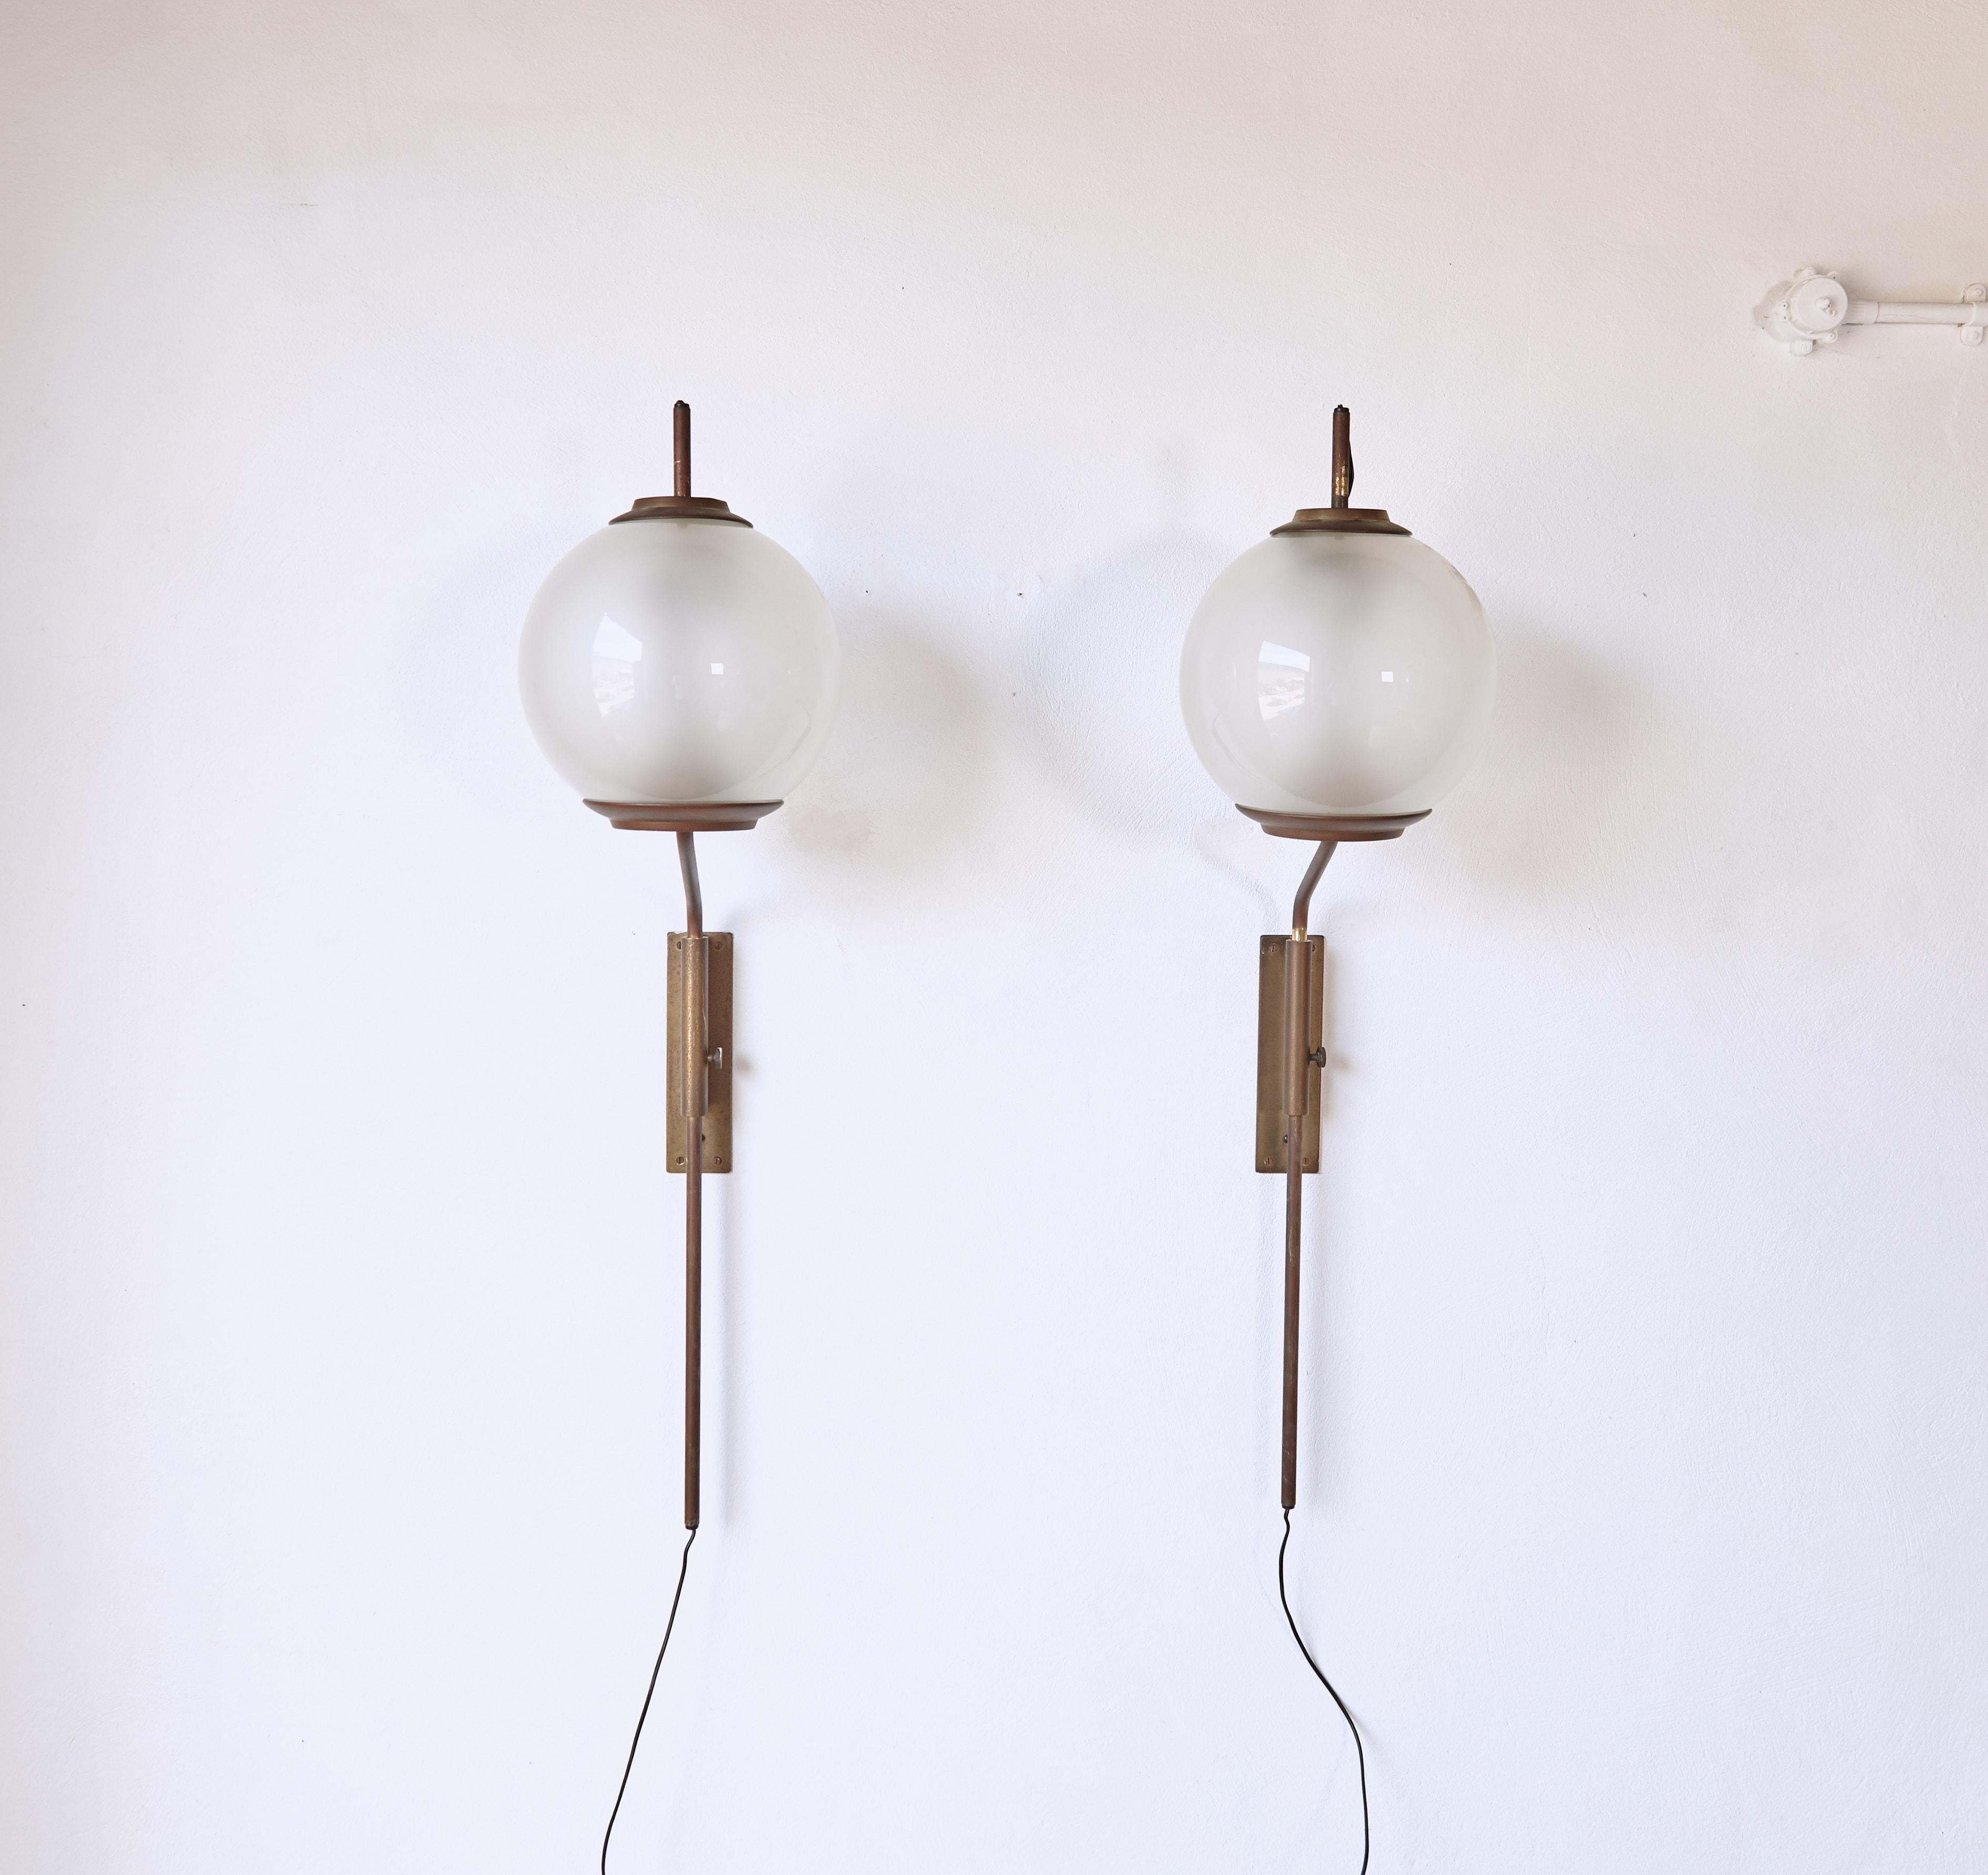 Une élégante paire originale de lampes murales Luigi Caccia Dominioni LP11 / Pallone, fabriquées par Azucena, Italie, dans les années 1950.  Cadre en laiton et abat-jour en verre opalin.  Il est possible d'ajuster les bras de la lampe de haut en bas